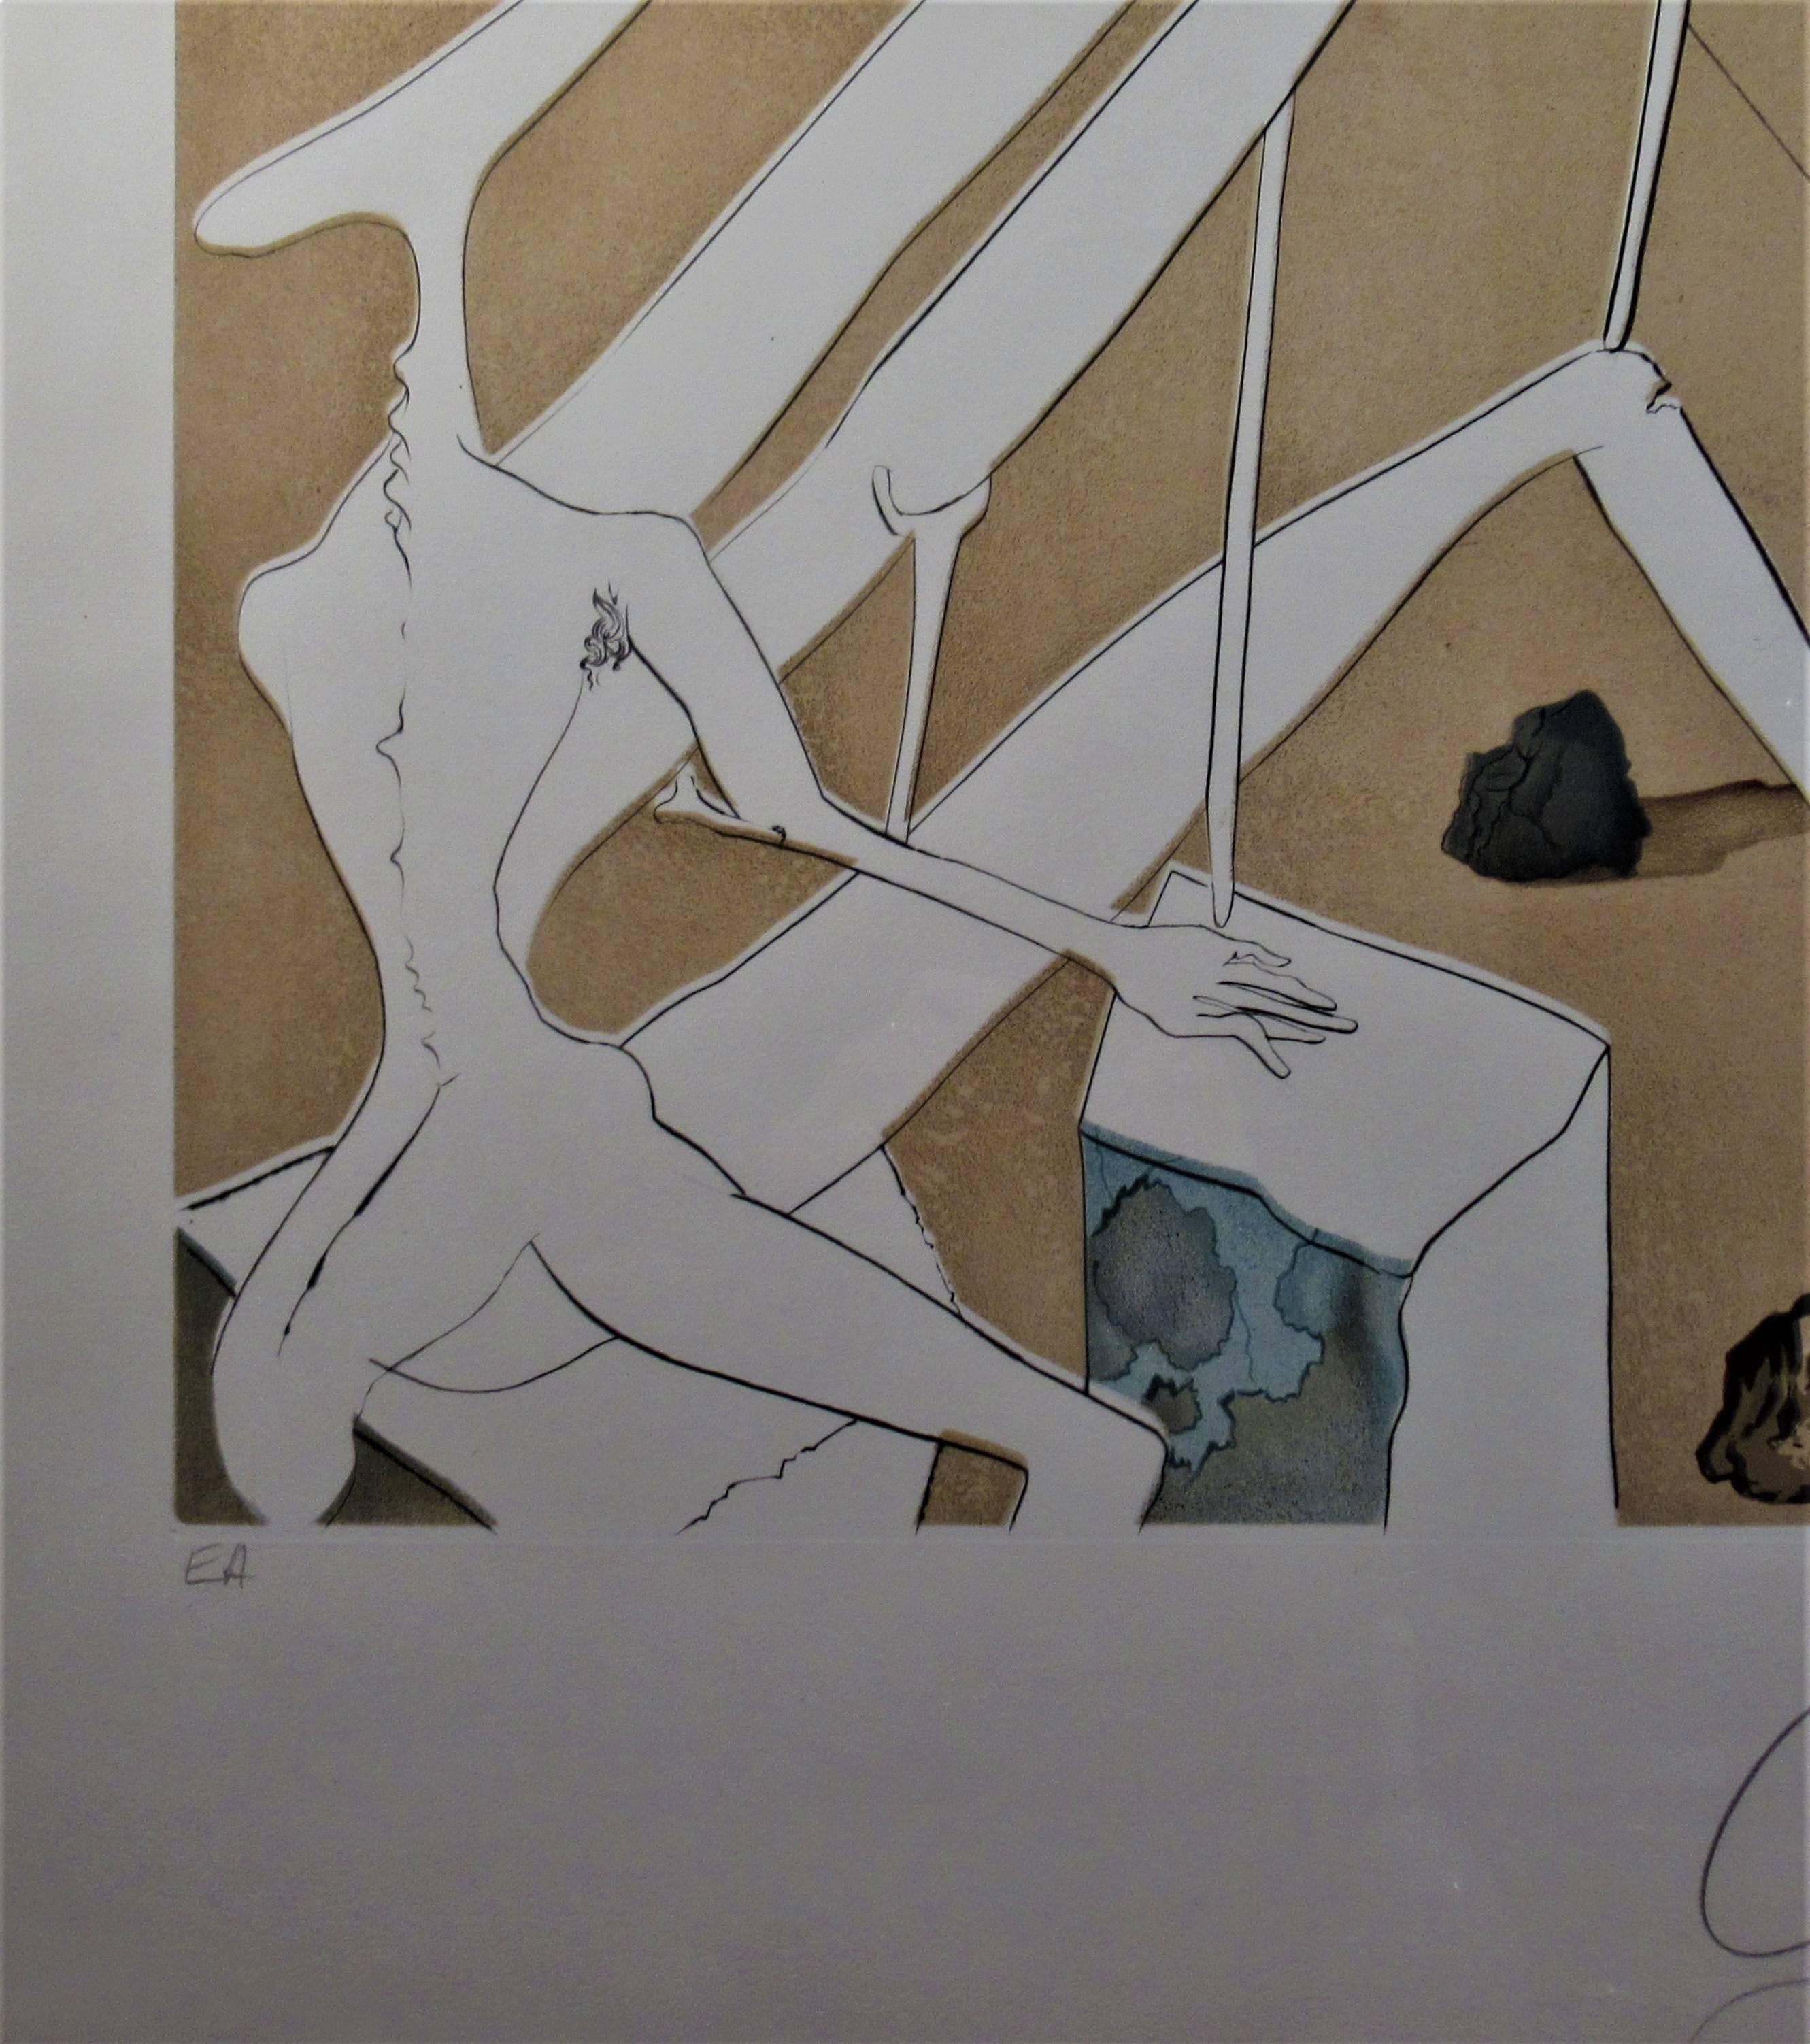 Dali Martian muni d'un Double Microscope Holoelectronique - Surrealist Print by Salvador Dalí